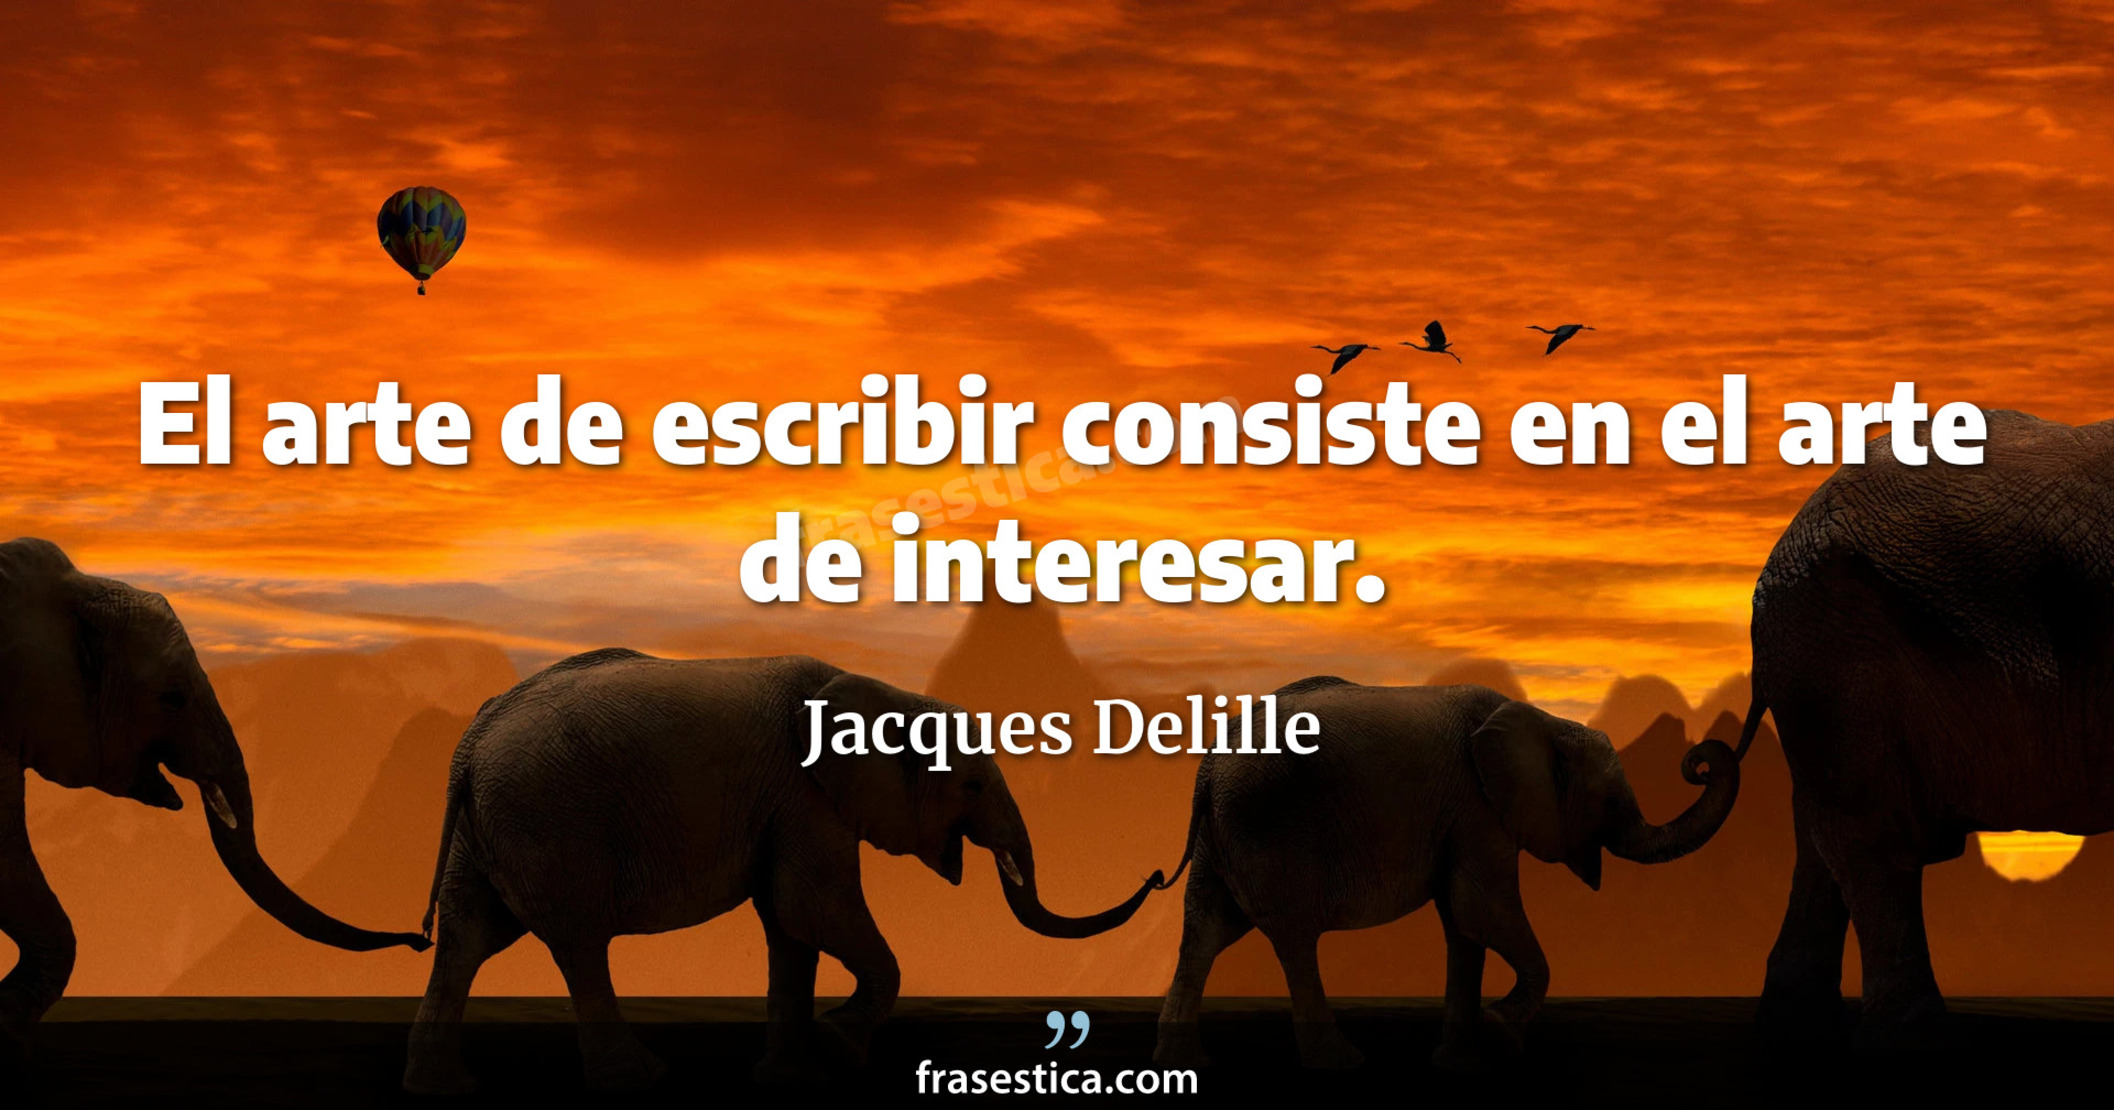 El arte de escribir consiste en el arte de interesar. - Jacques Delille